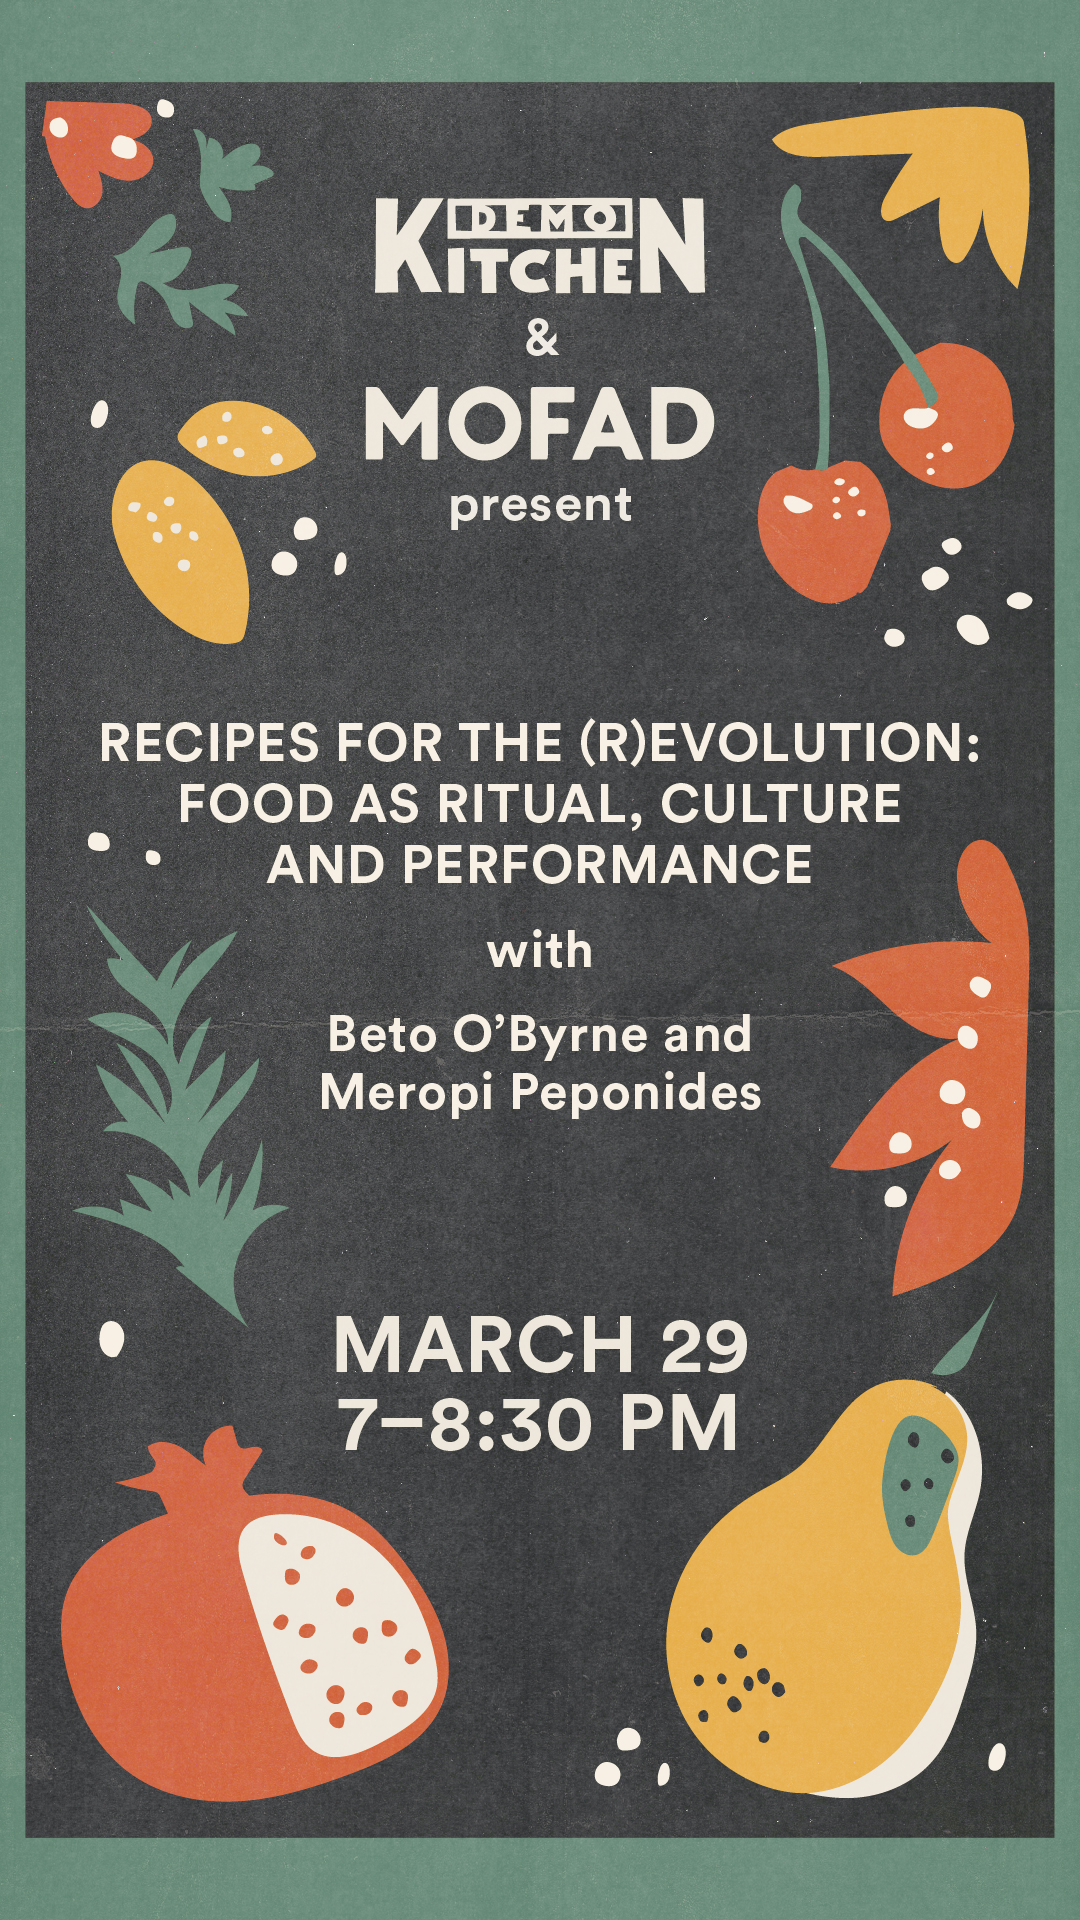 Demo Kitchen & MOFAD event promo - March 29